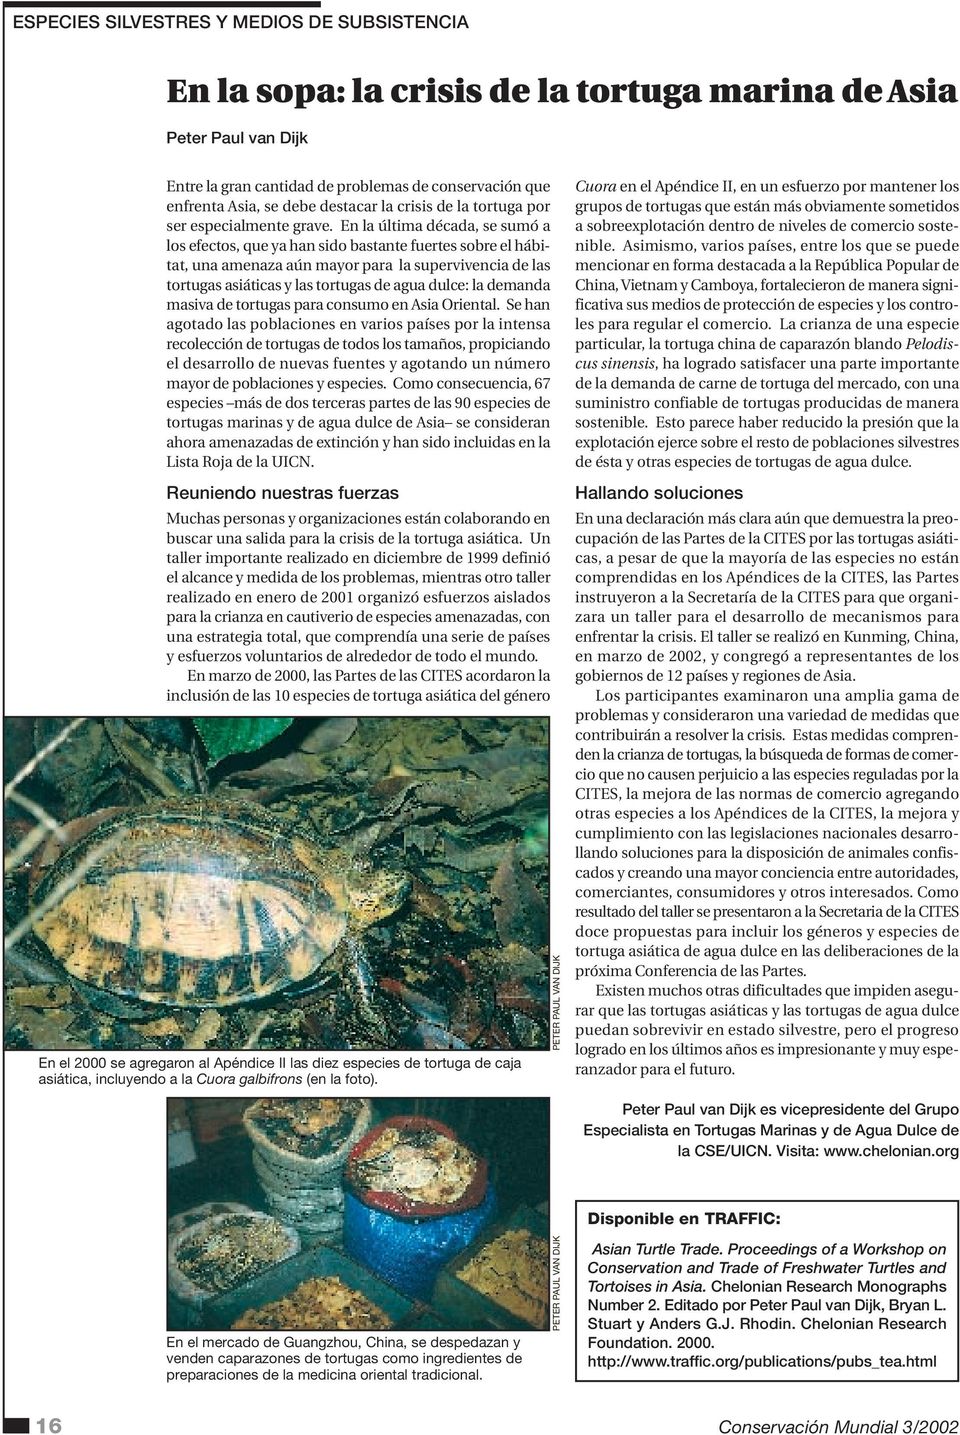 En la última década, se sumó a los efectos, que ya han sido bastante fuertes sobre el hábitat, una amenaza aún mayor para la supervivencia de las tortugas asiáticas y las tortugas de agua dulce: la